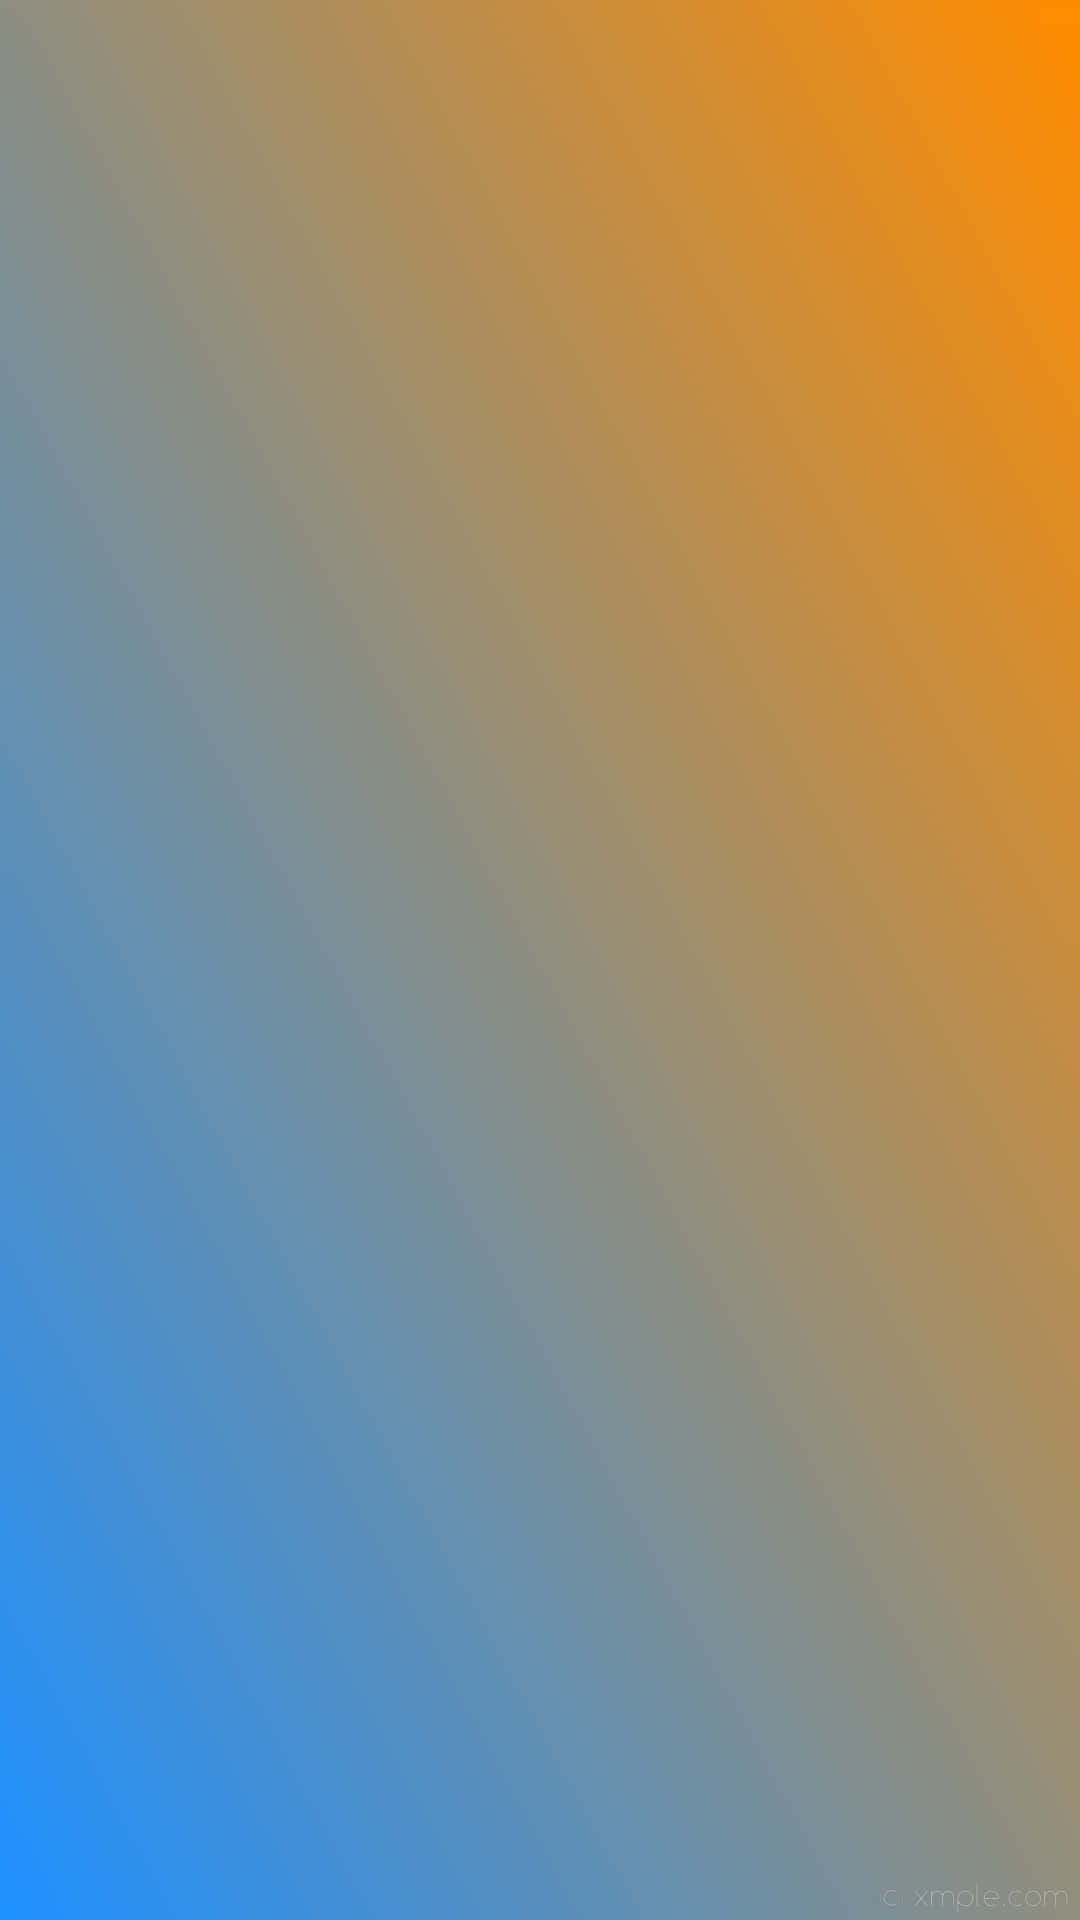 Einhintergrund In Orange Und Blau Mit Einem Blauen Und Orangefarbenen Streifen. Wallpaper